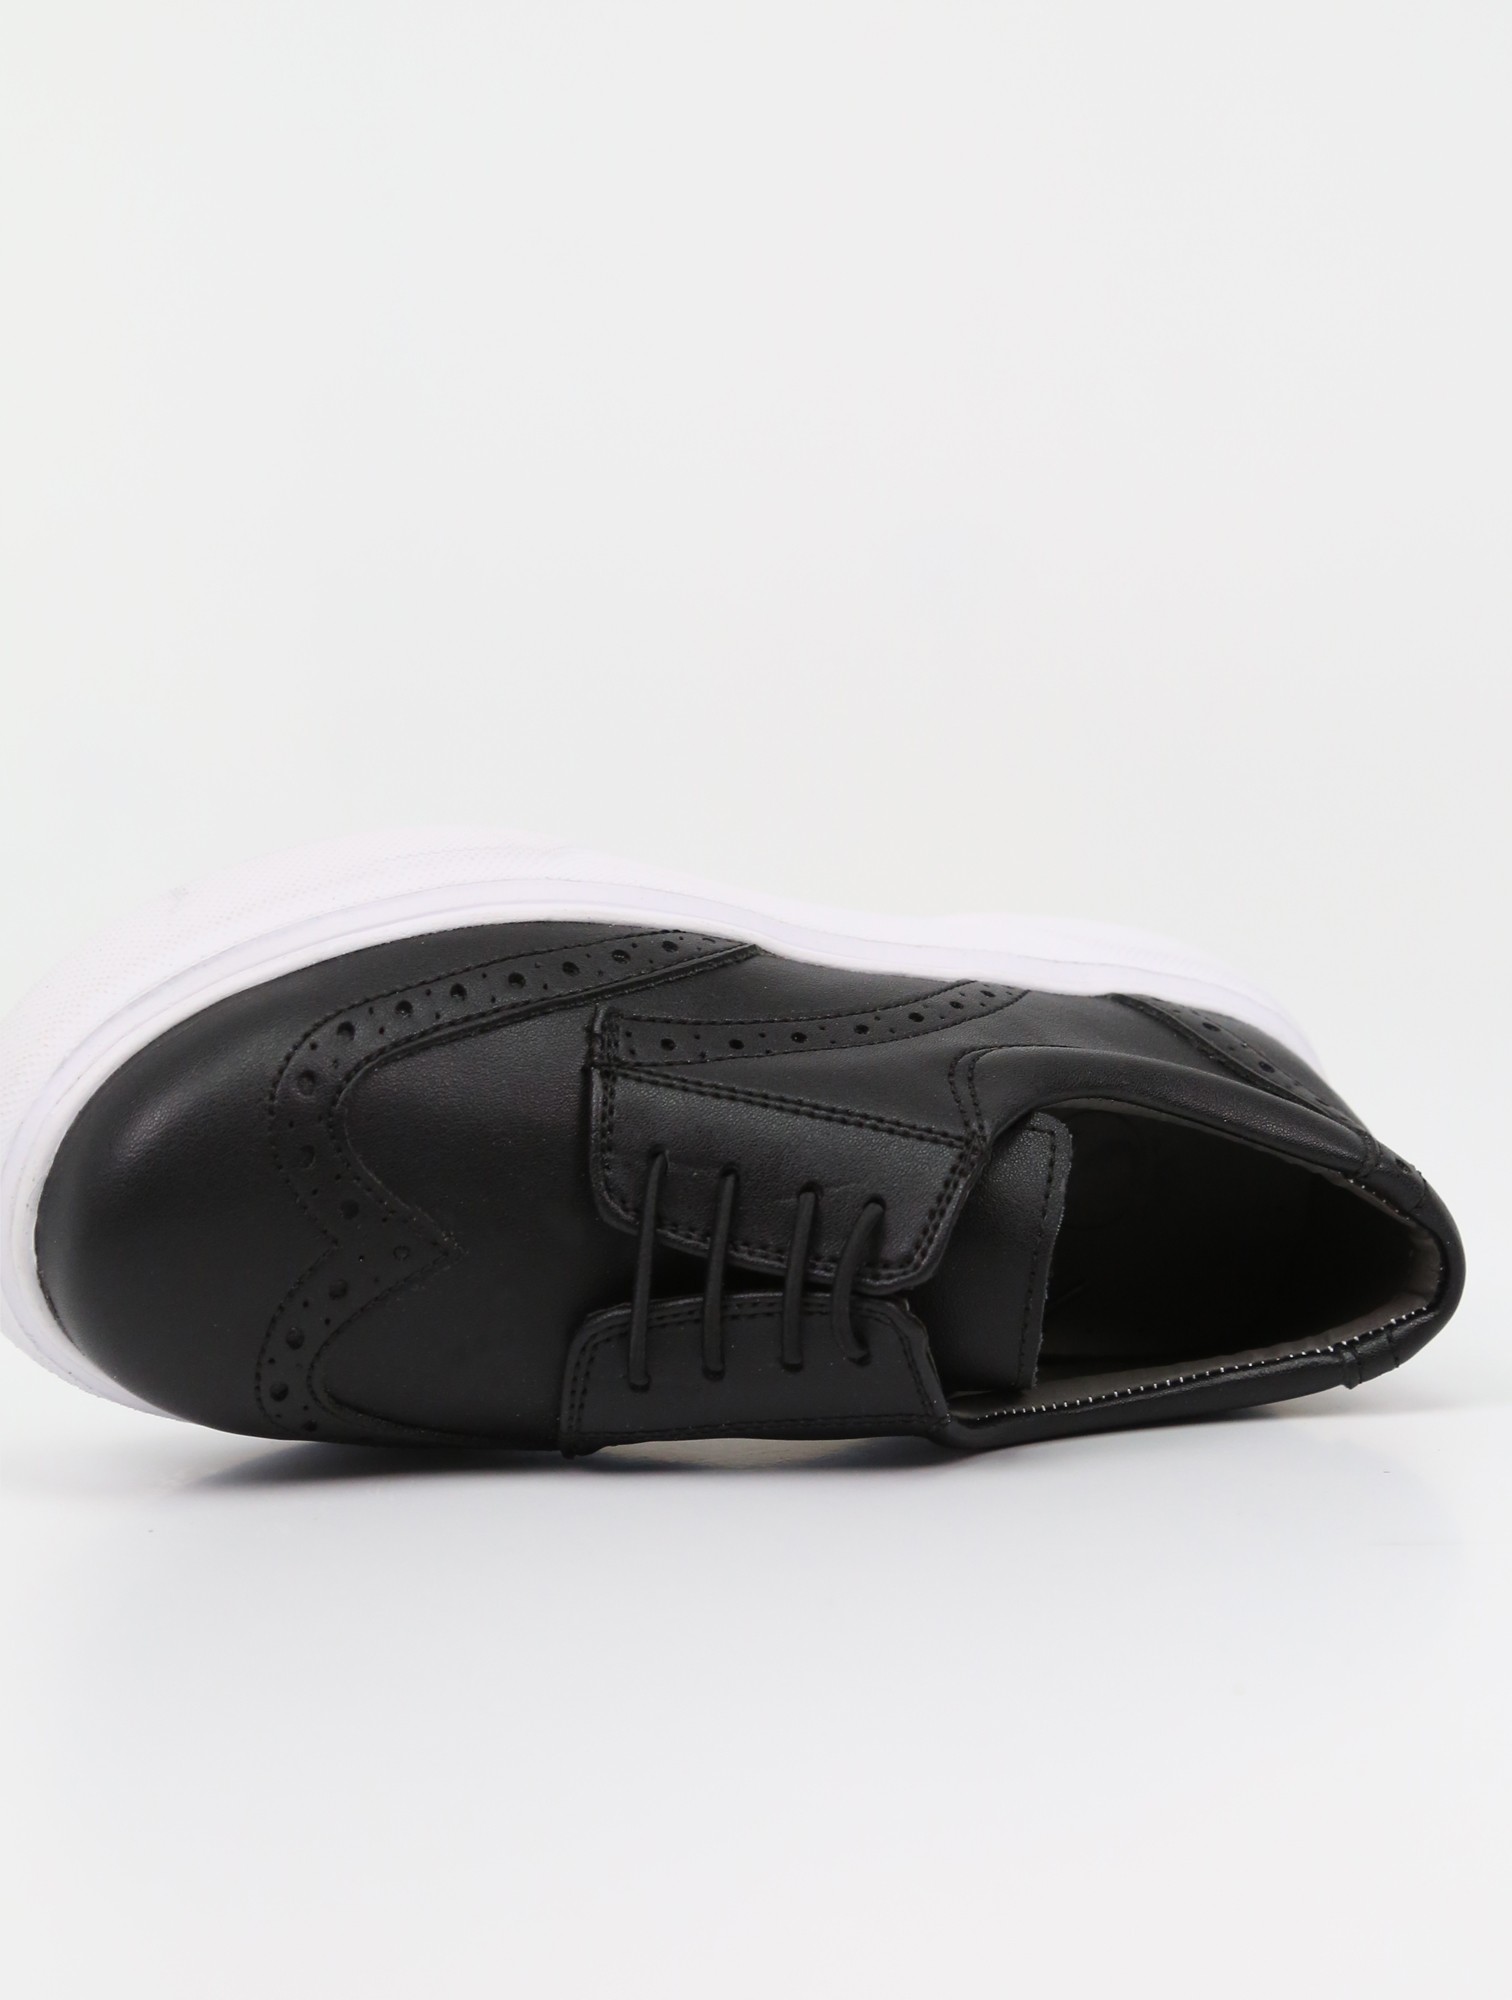 Jungen Schwarze Oxford Kleid Schuhe, Klassisches Slip-On Design für Formelle & Lässige Trageweise